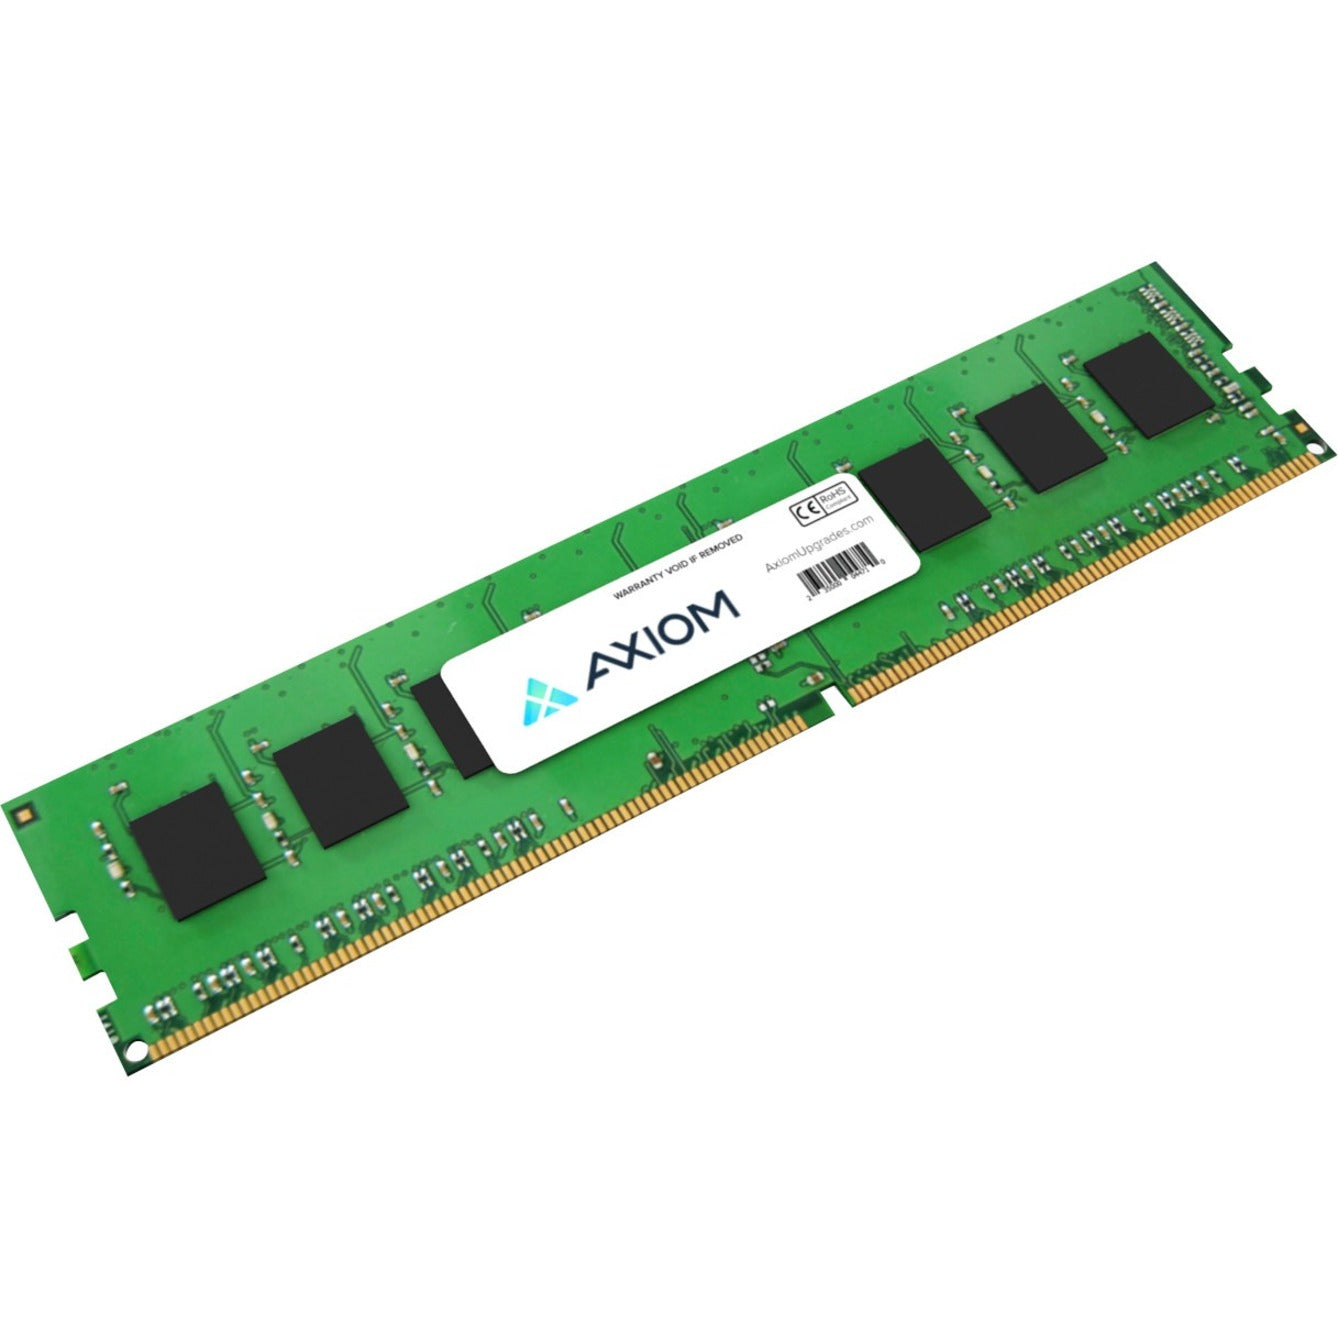 Axiom AX1021101084/1 32GB DDR4 SDRAM Memory Module, Lifetime Warranty, RoHS Certified